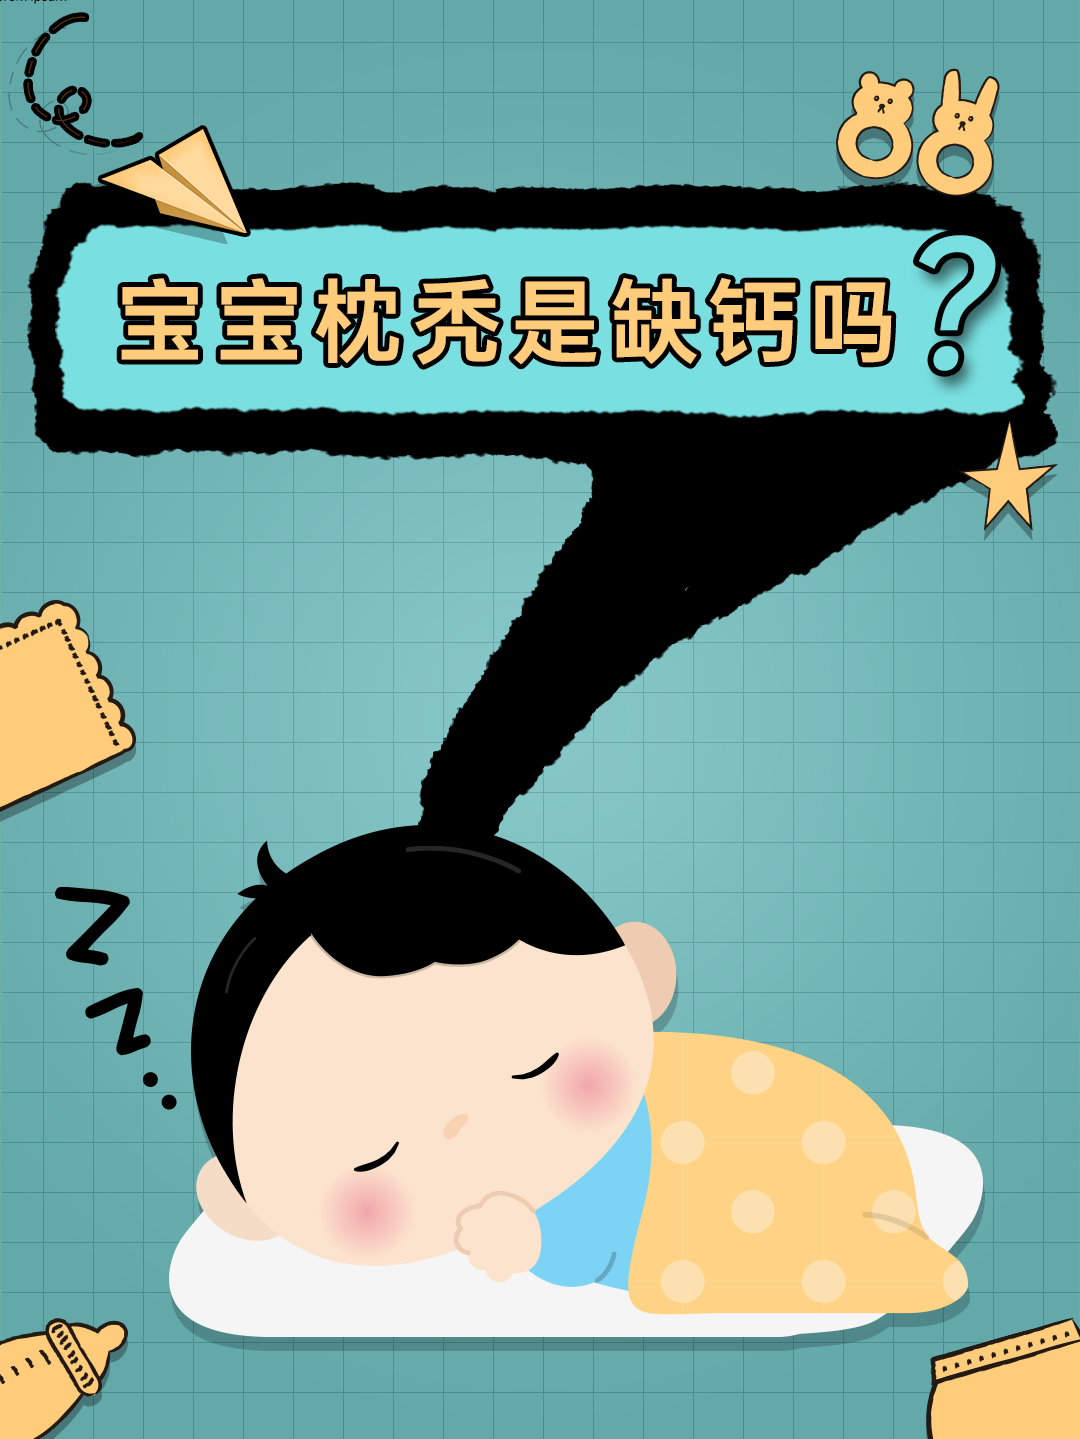 宝宝枕秃是缺钙吗?